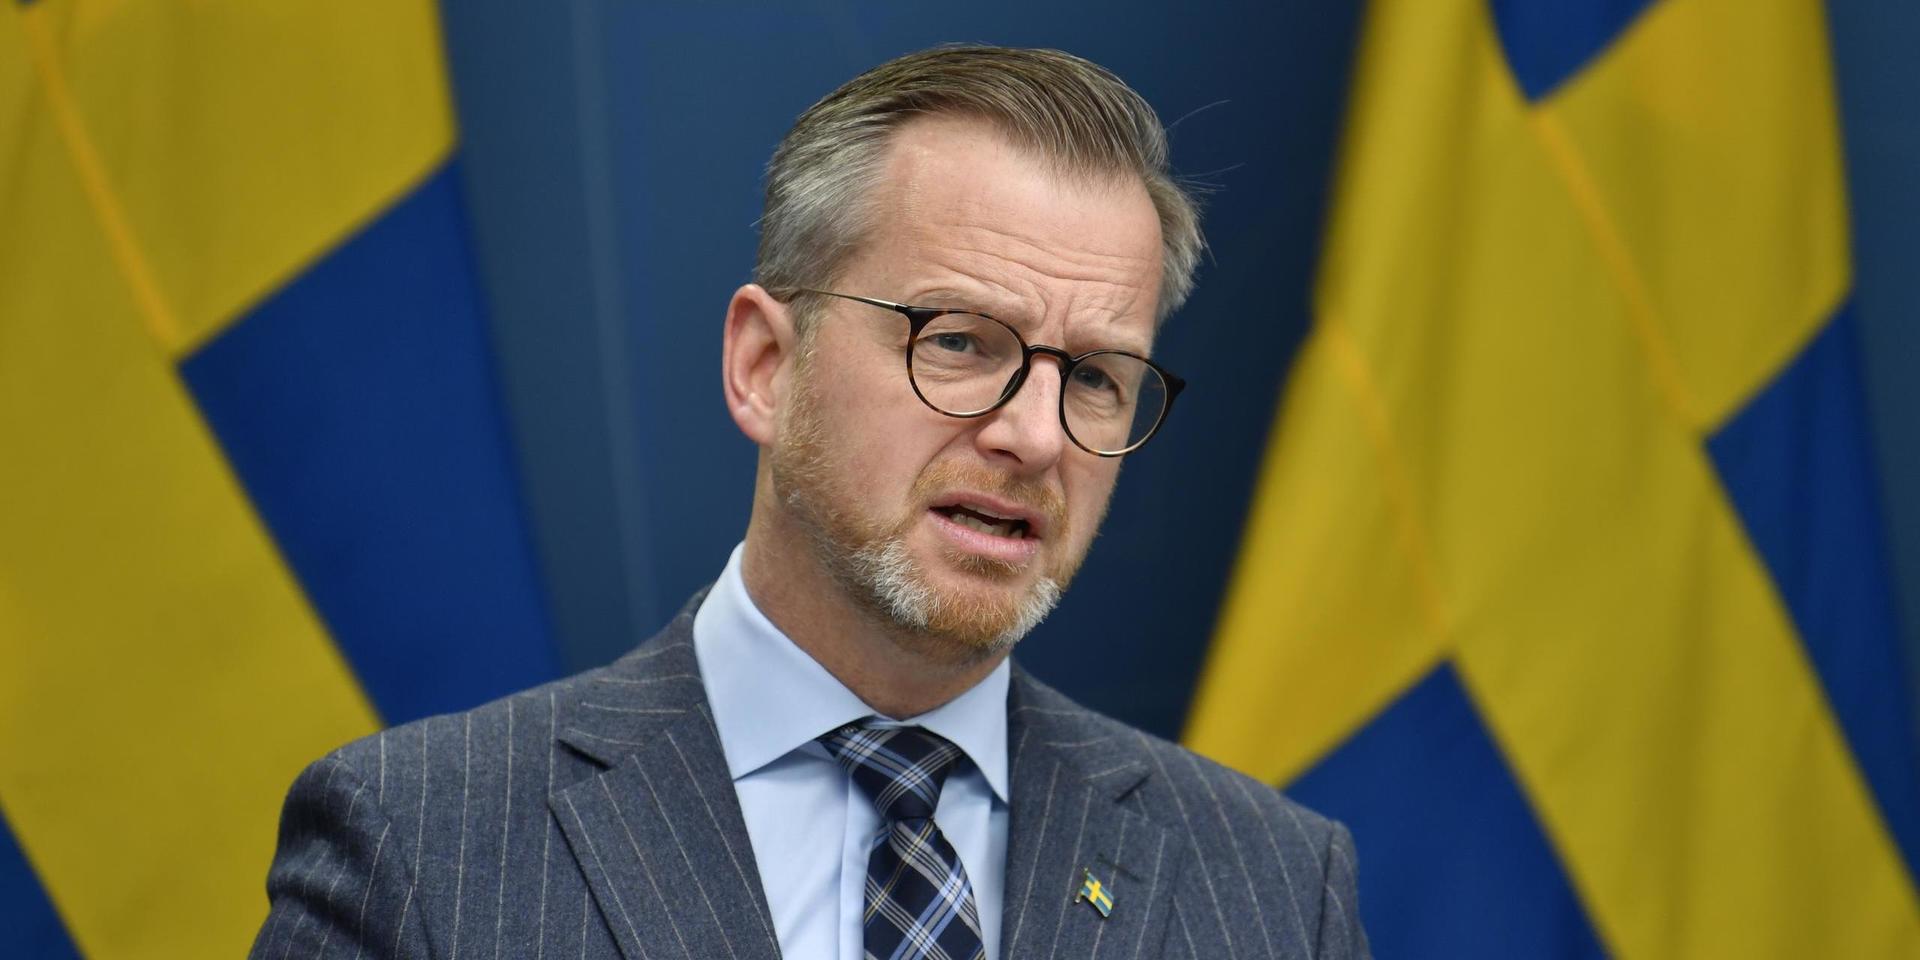 Inrikesminister Mikael Damberg (S) meddelade åtgärder på måndagen, med anledning av virusmutationen som upptäckts i Storbritannien.